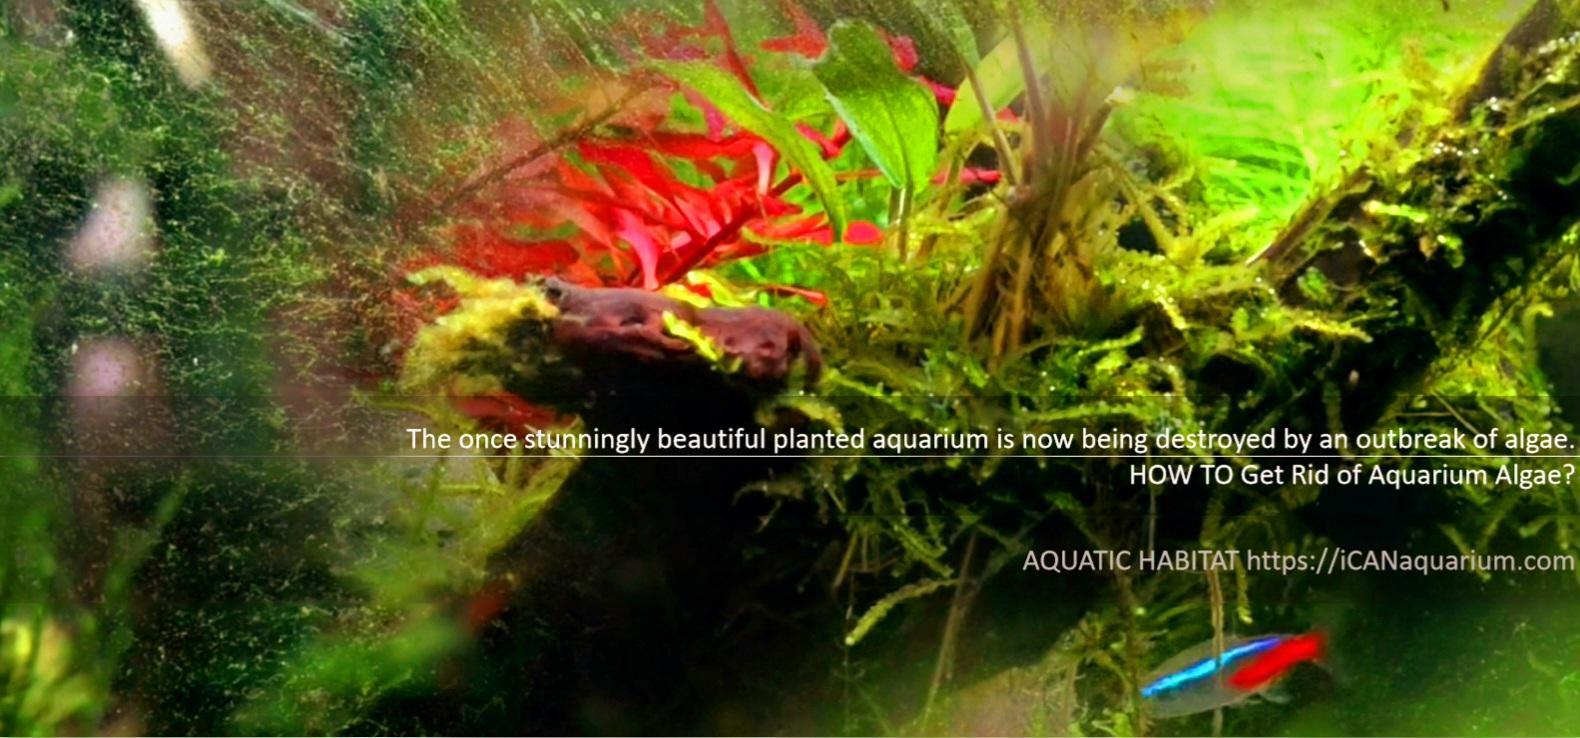 Get Rid of Aquarium Algae